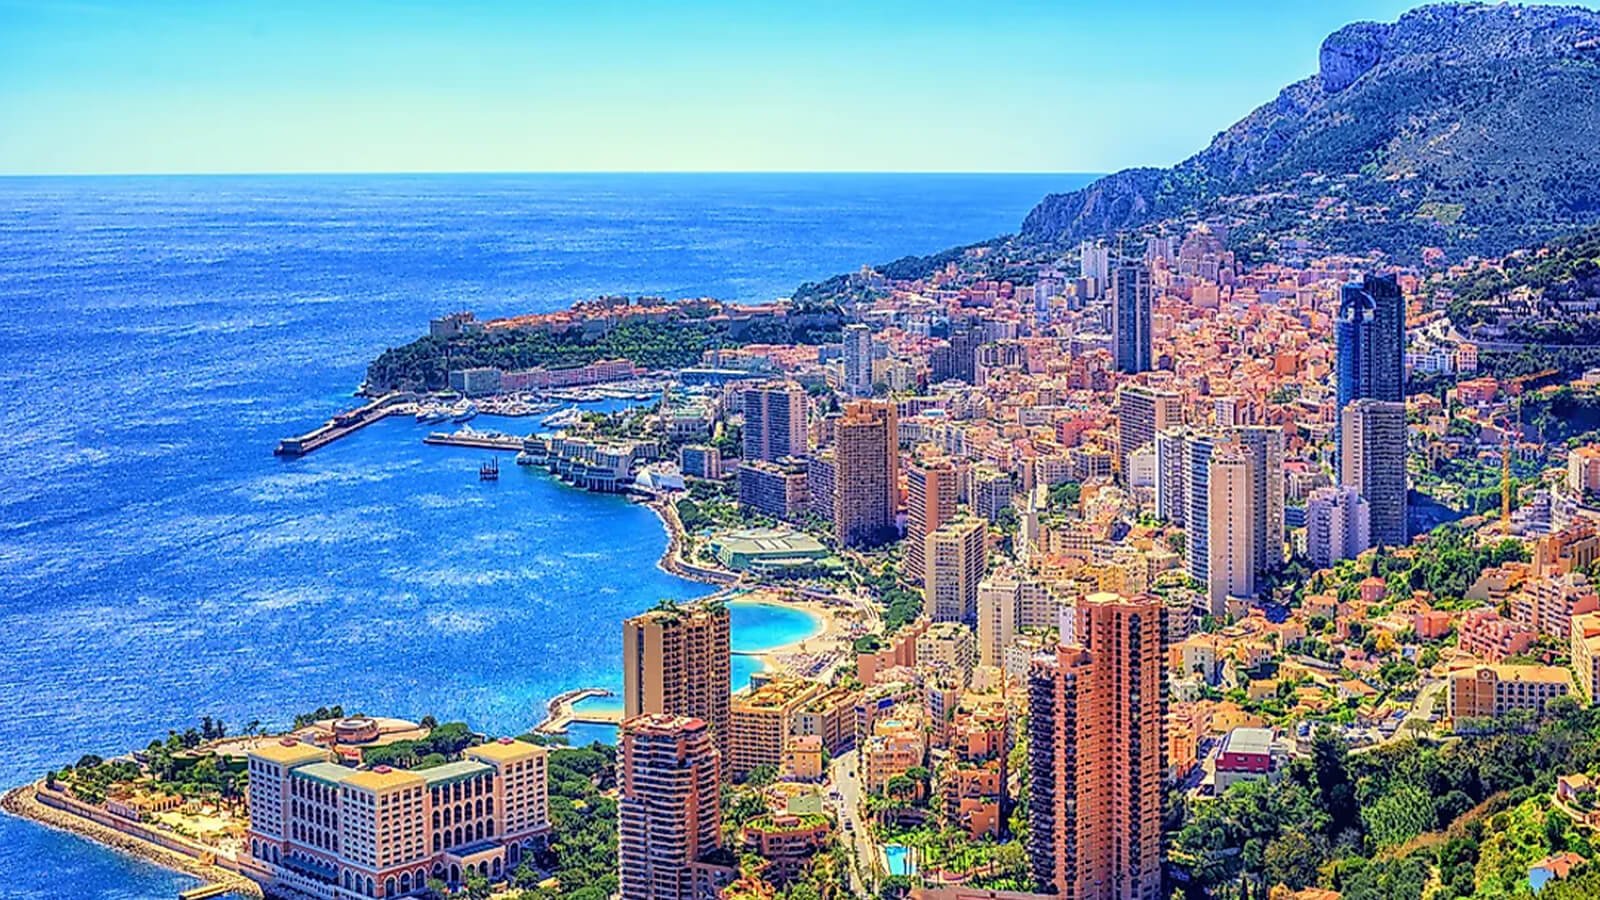 Image of Villefranche/Monaco